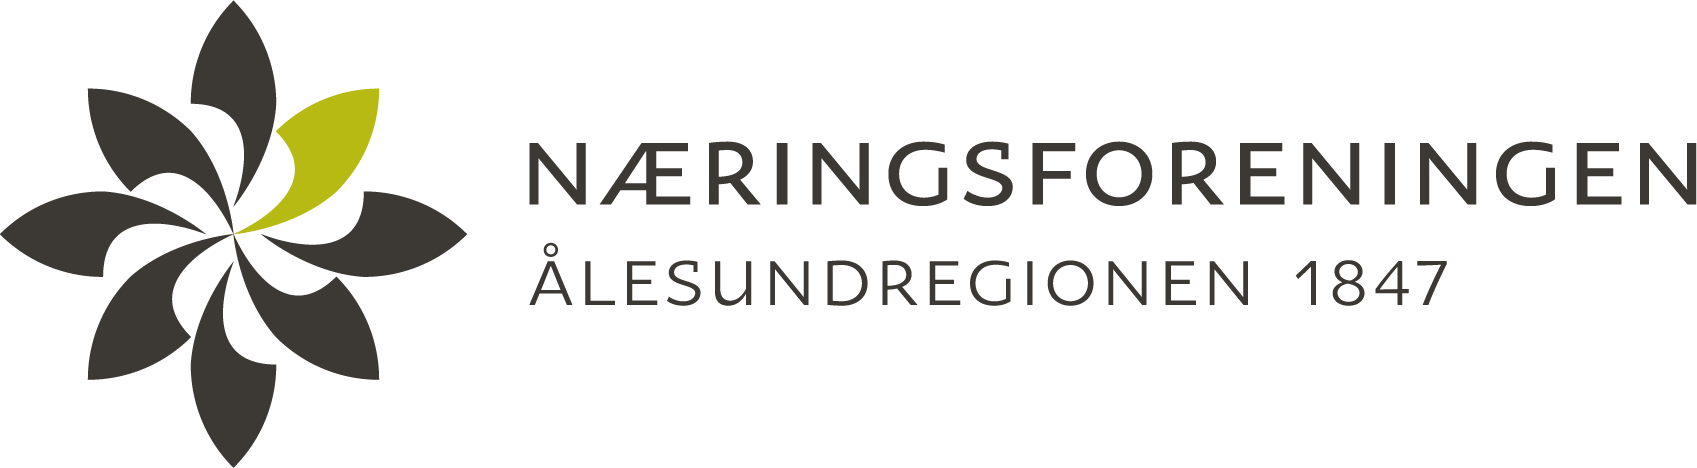 Næringsforeningen i Ålesundregionen